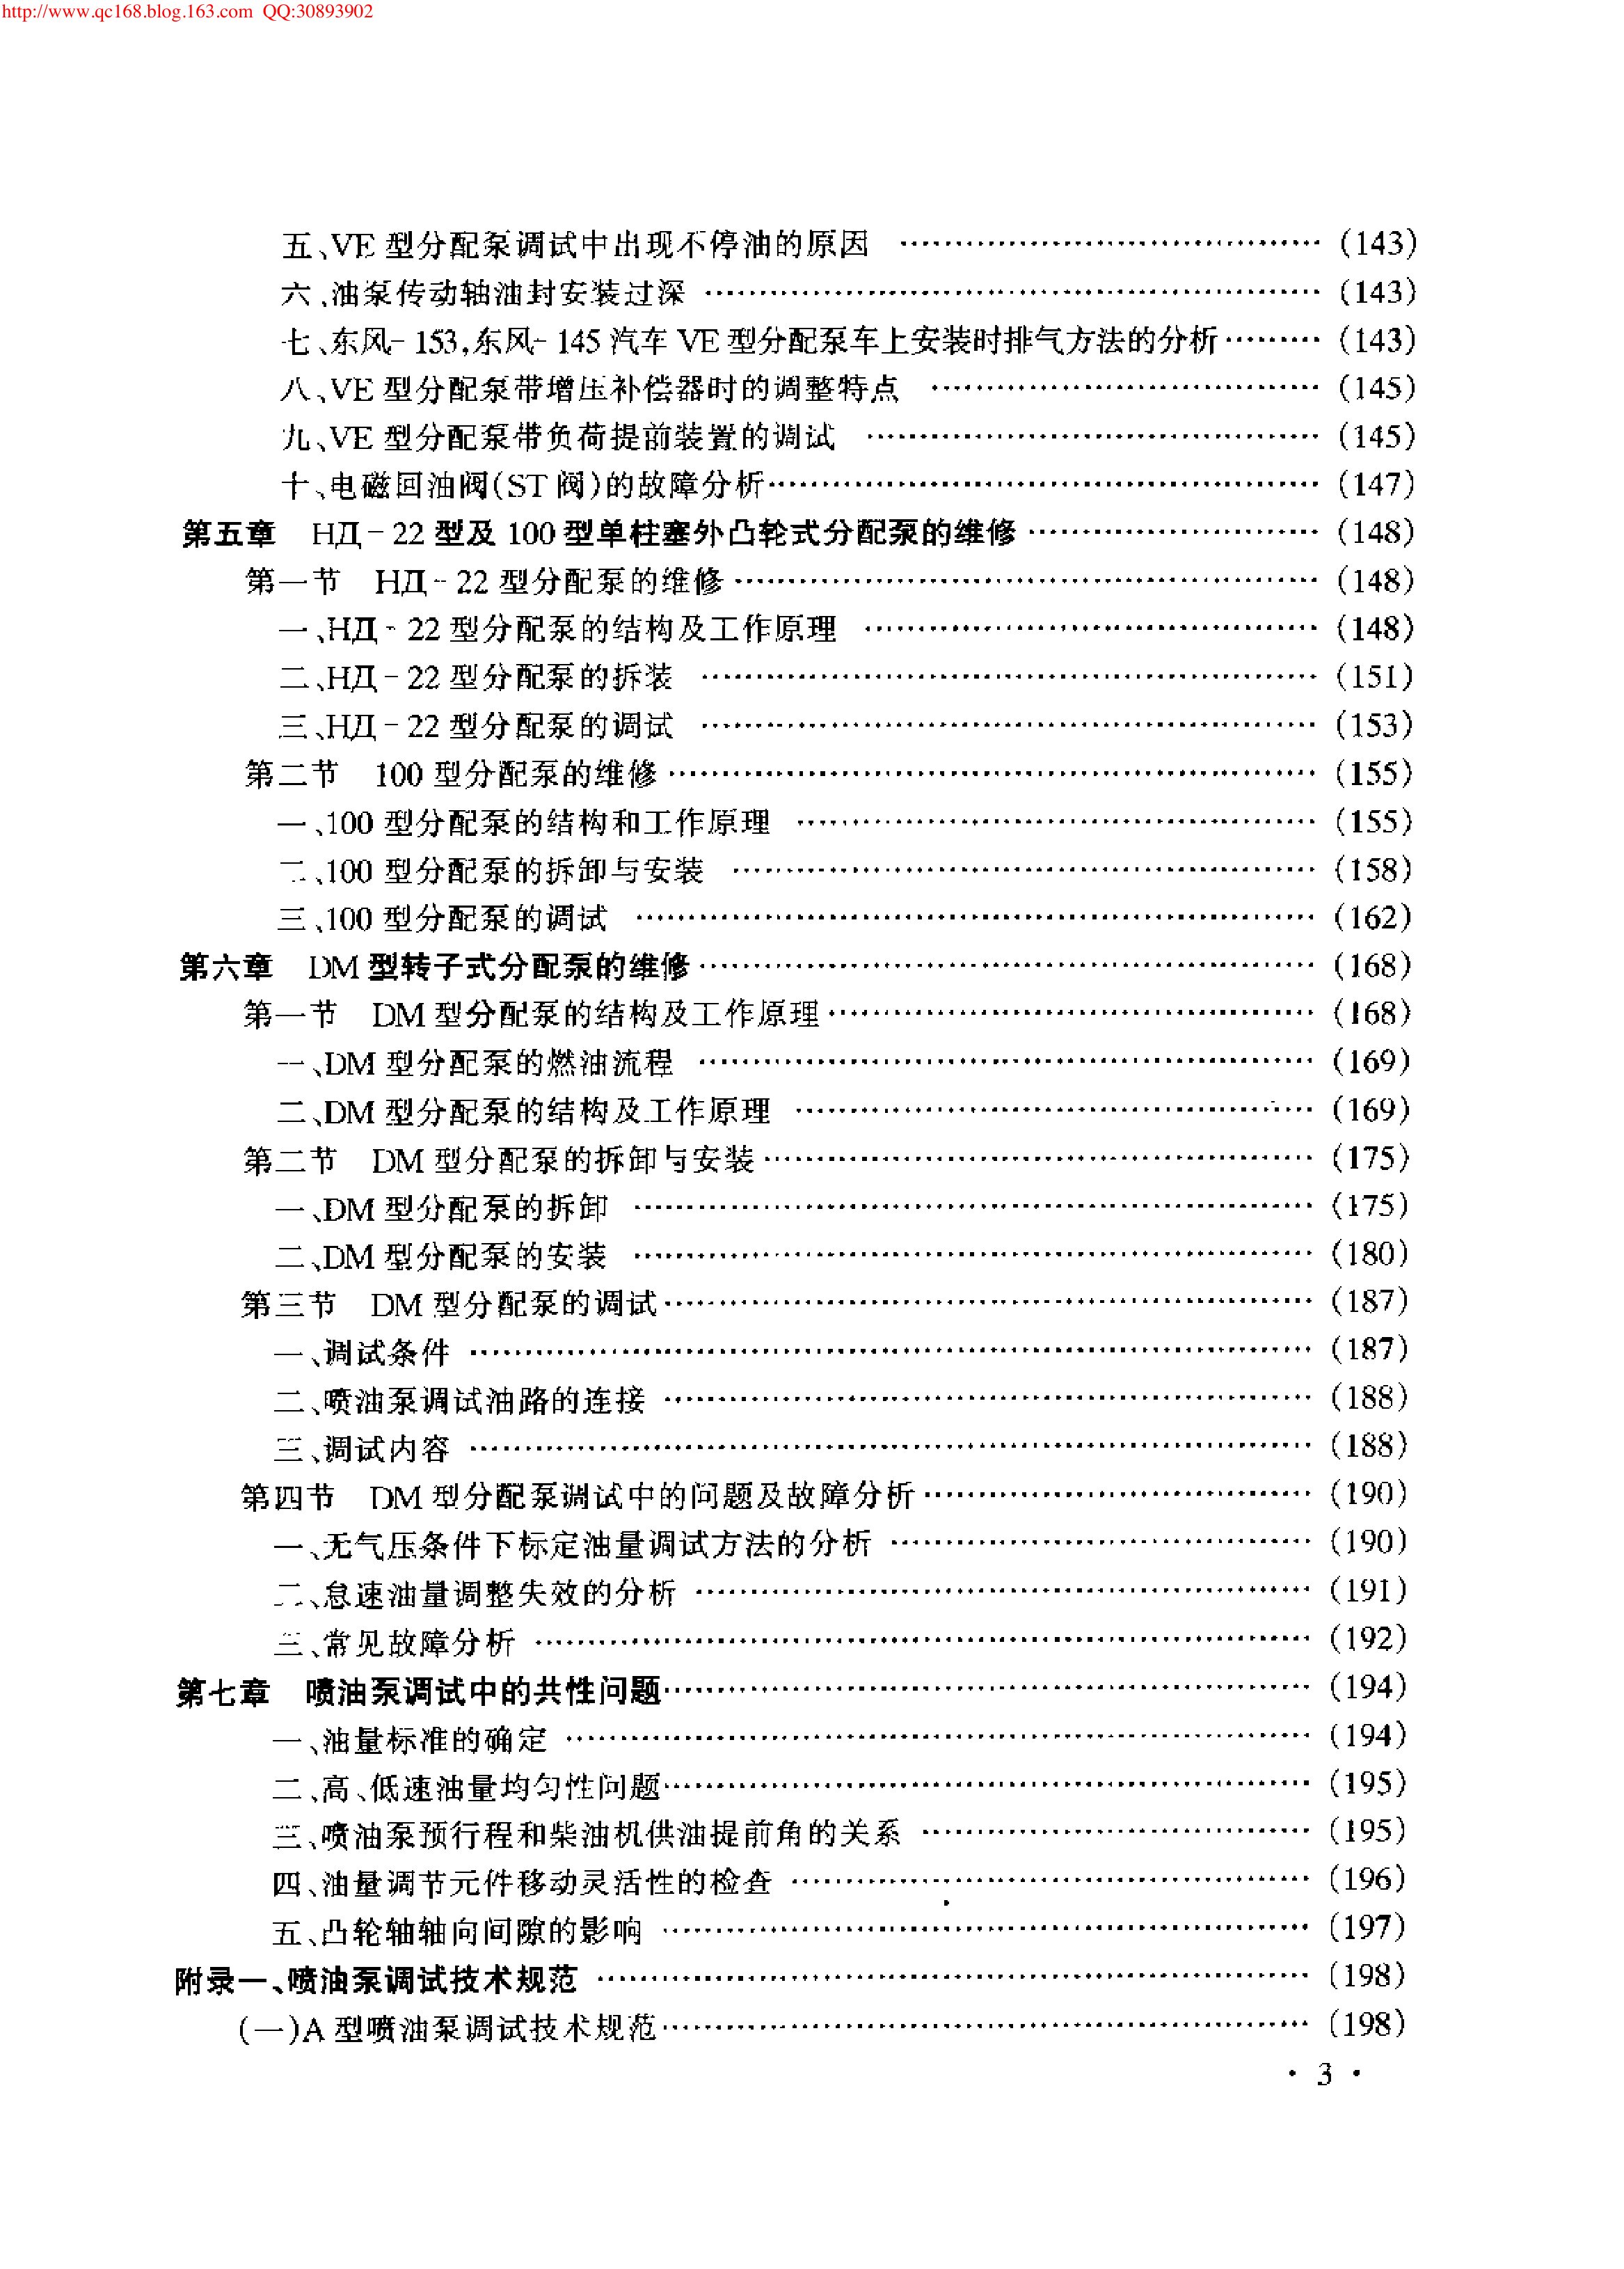 19.柴油机喷油泵维修技术.pdf-第8页.png